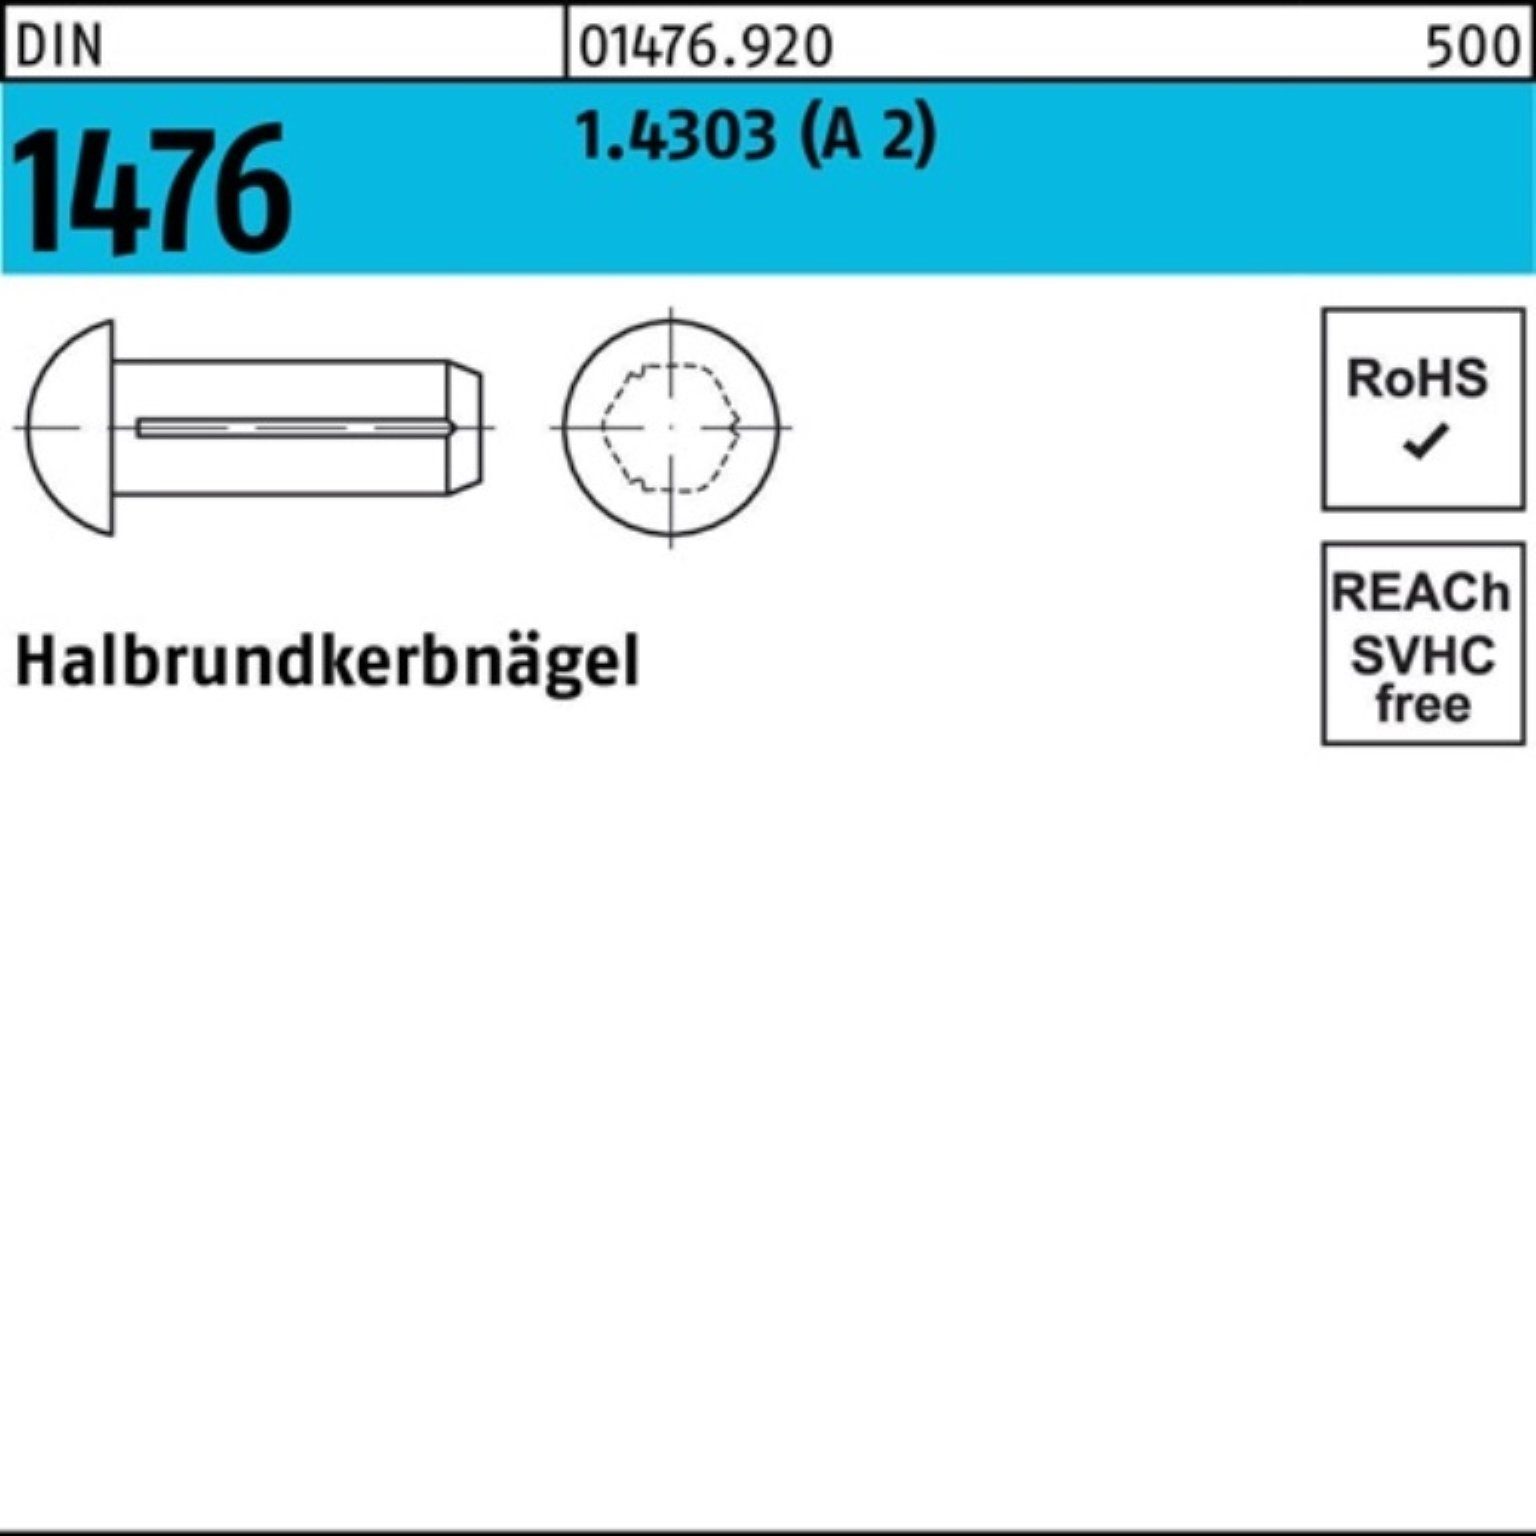 Reyher Nagel 100er Halbrundkerbnagel Pack 1476 1.4303 (A 4 Stück 2) 3x DIN DIN 100